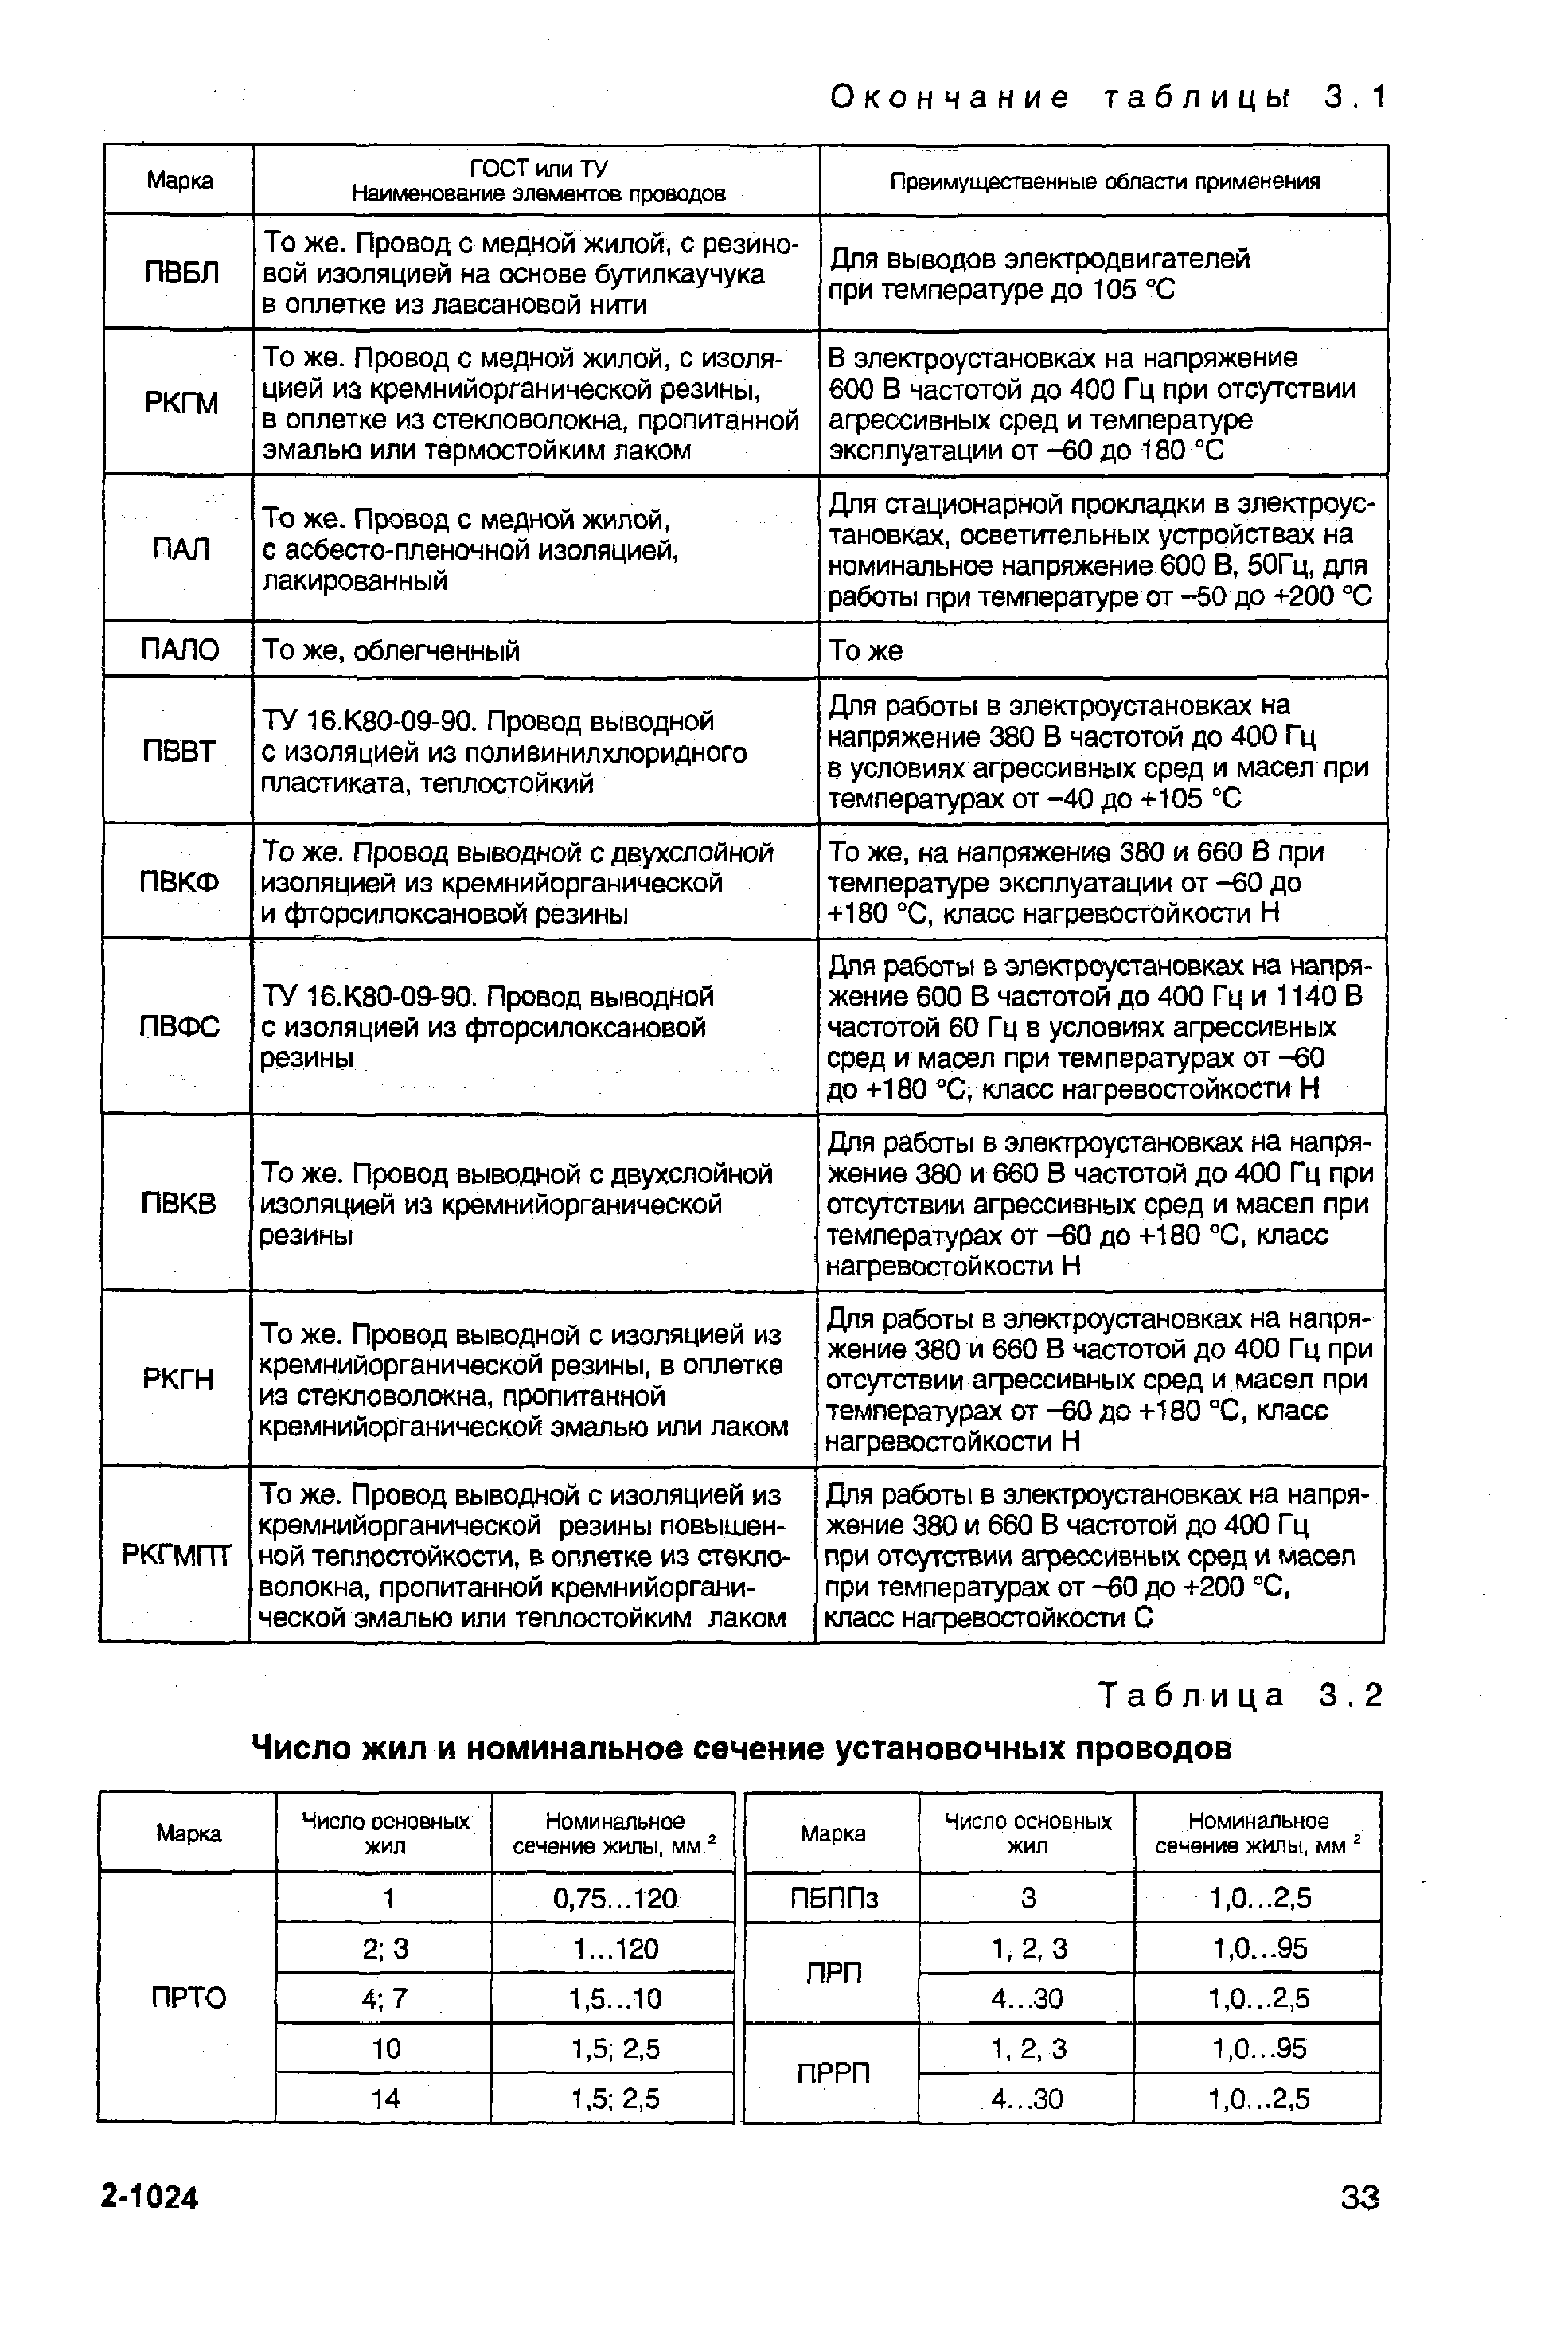 Таблица 3.2 Число жил и номинальное сечение установочных проводов
